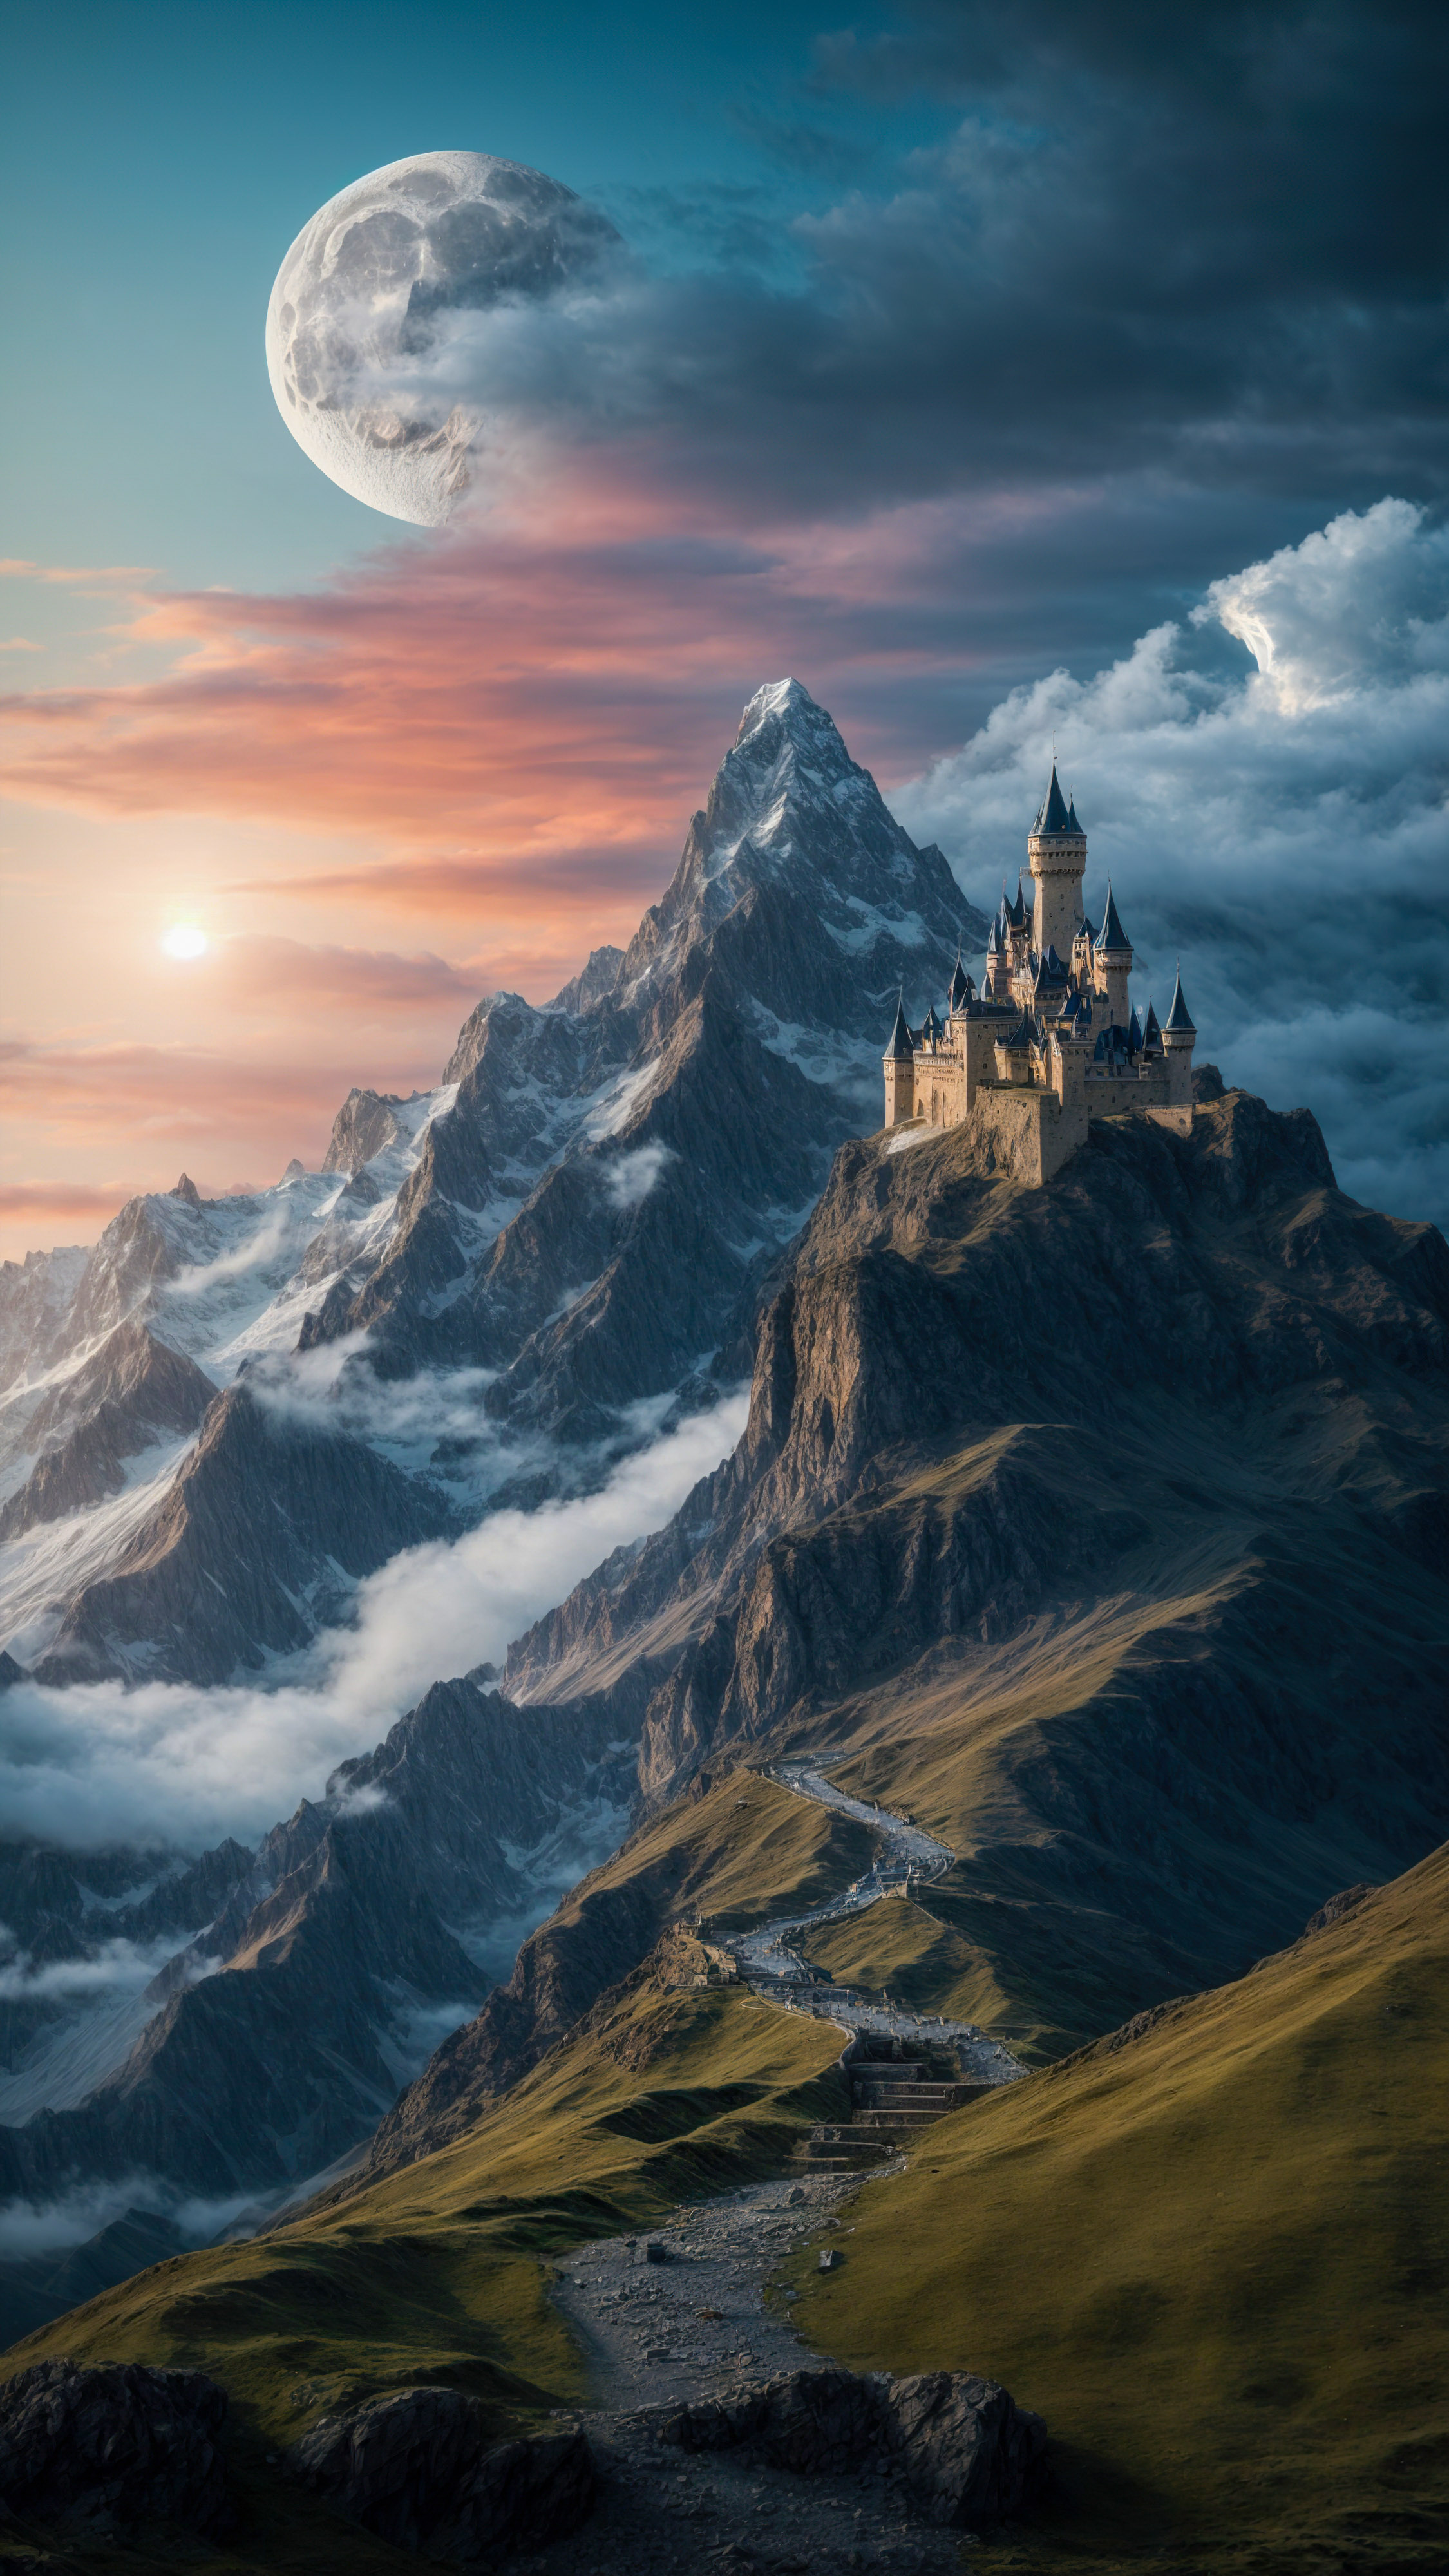 Laissez-vous hypnotiser par des arrière-plans cool présentant une montagne fantastique avec un château et un dragon, sous un ciel magique et une lune.